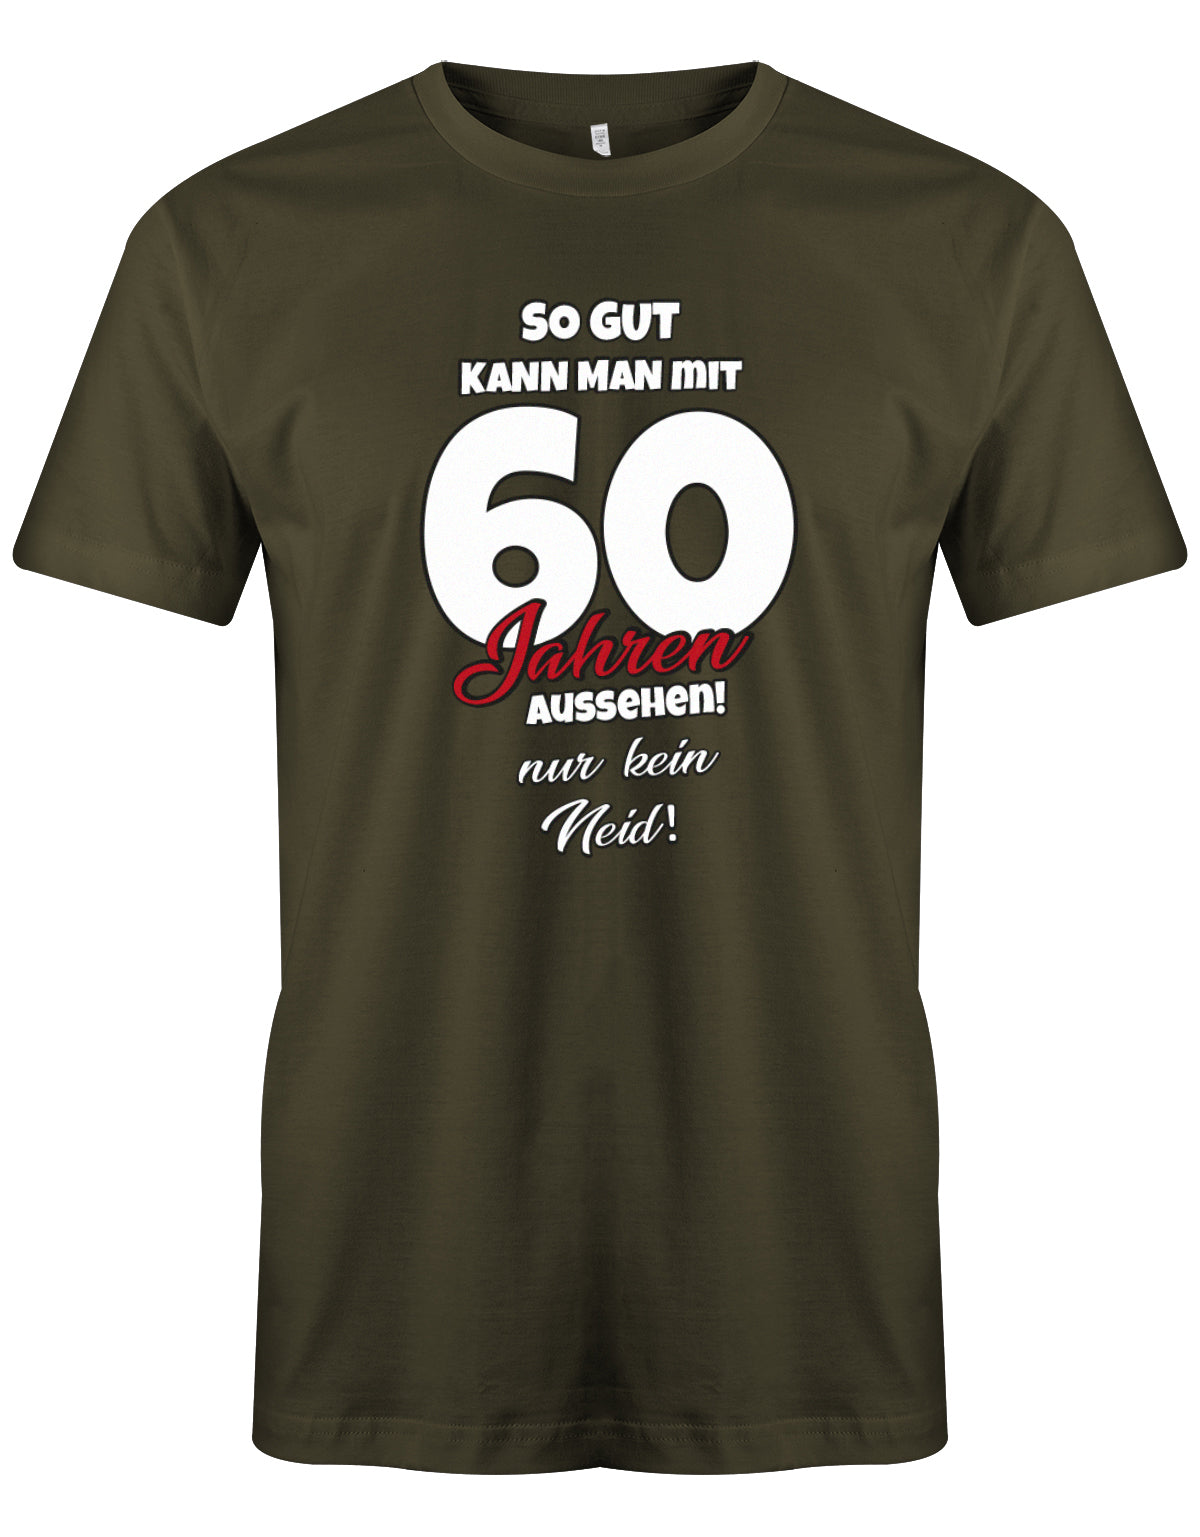 Lustiges T-Shirt zum 60 Geburtstag für den Mann Bedruckt mit So gut kann man mit 60 Jahren aussehen! Nur kein Neid! Army